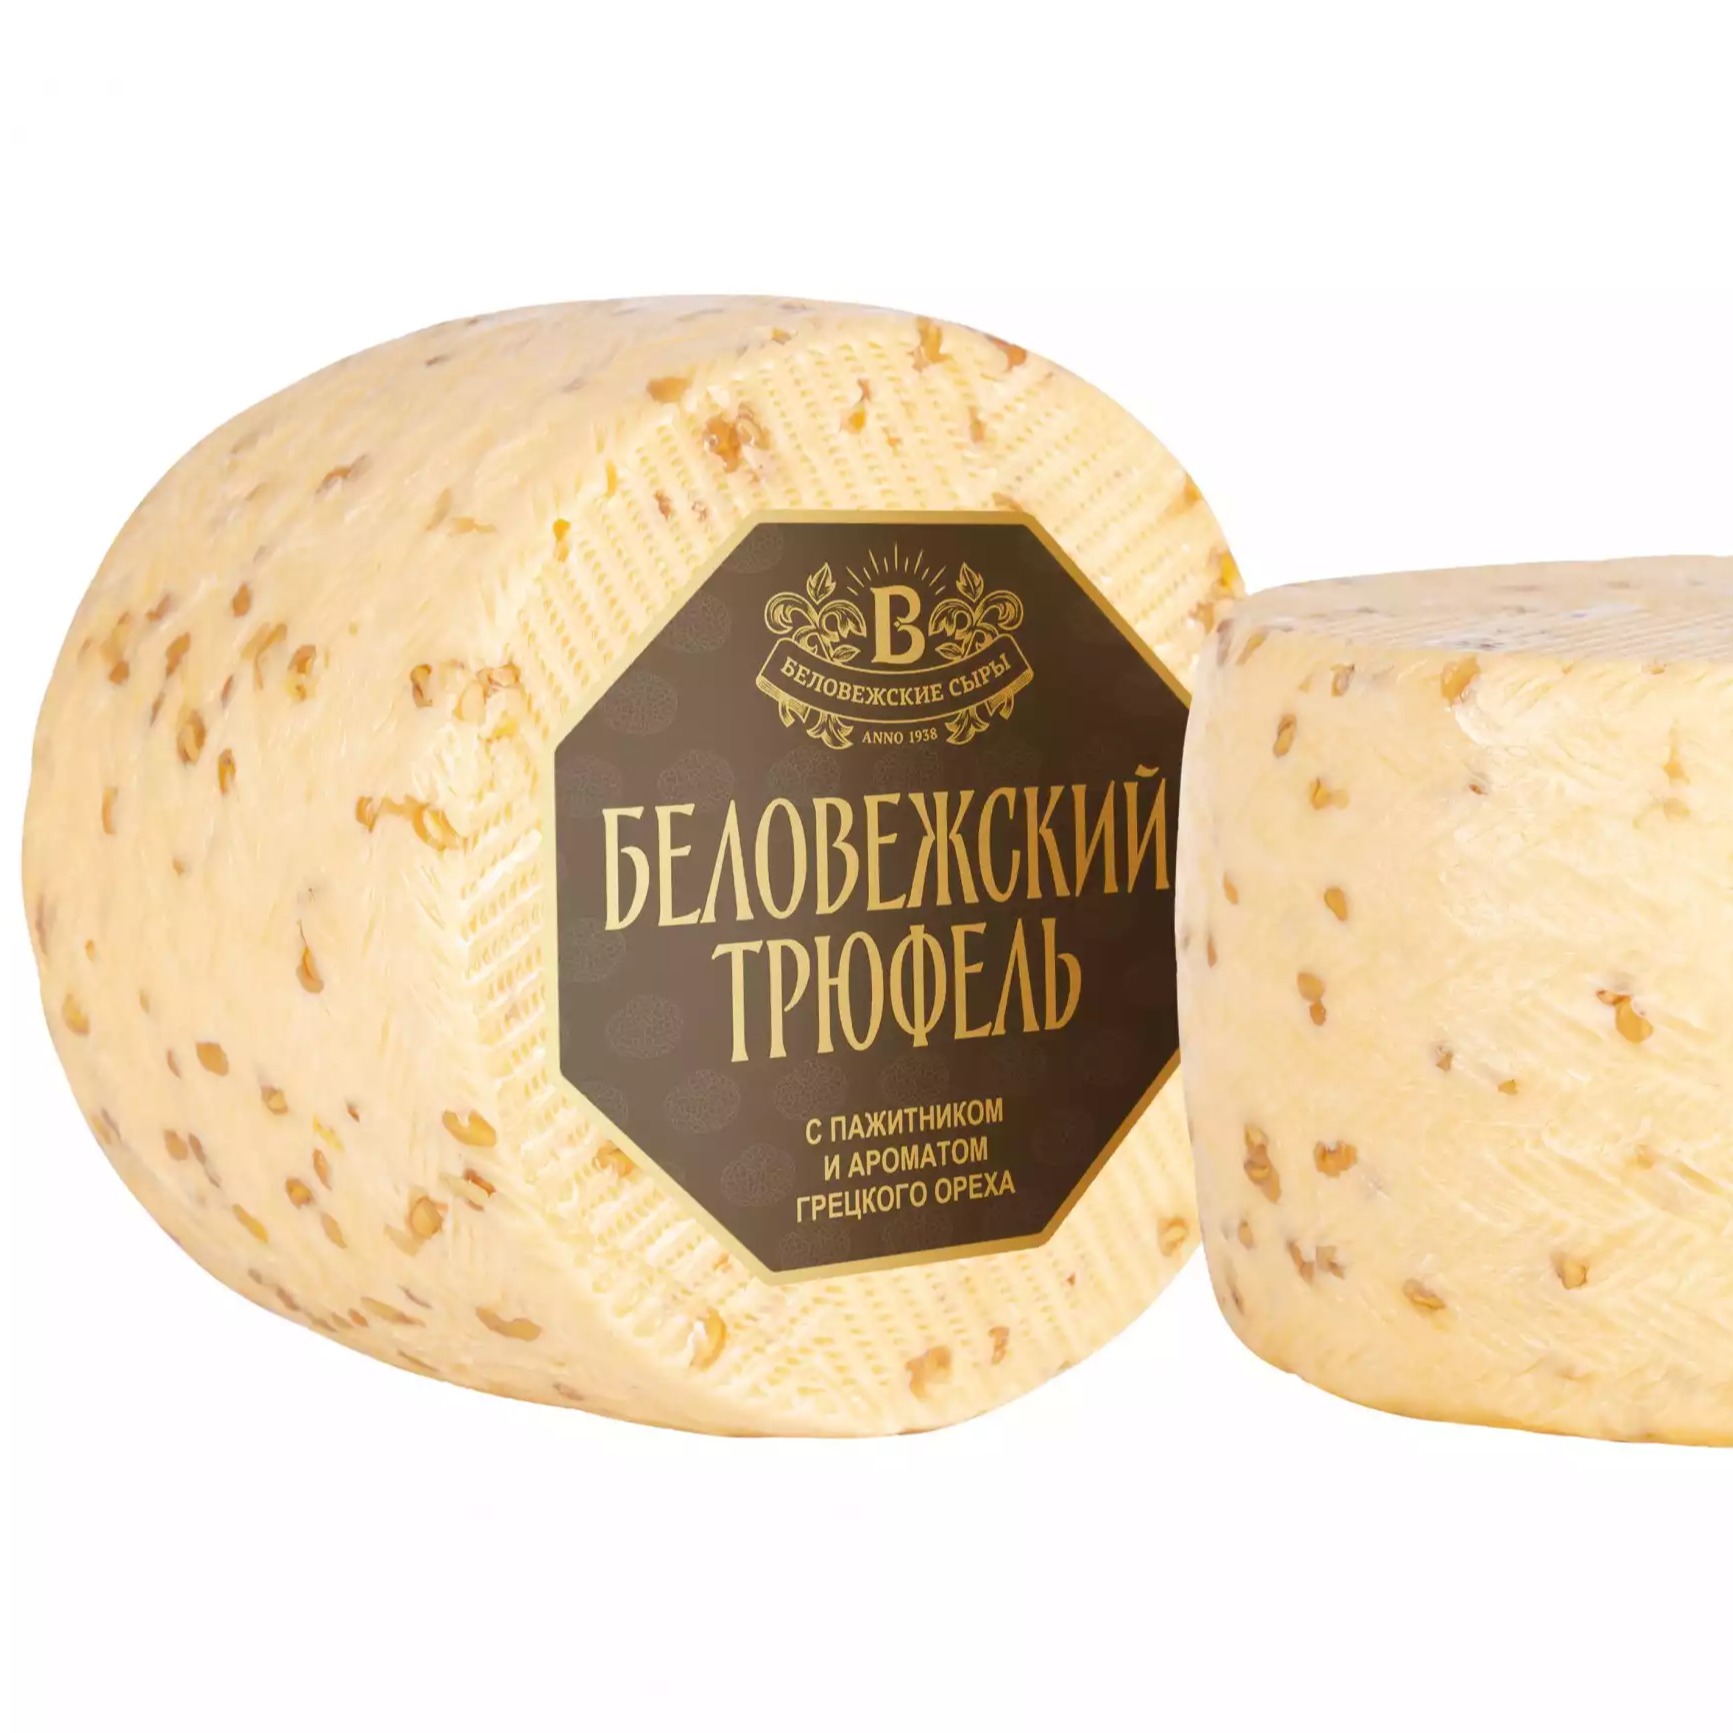 белорусский сыр беловежский трюфель пажитник купить в москве оптом